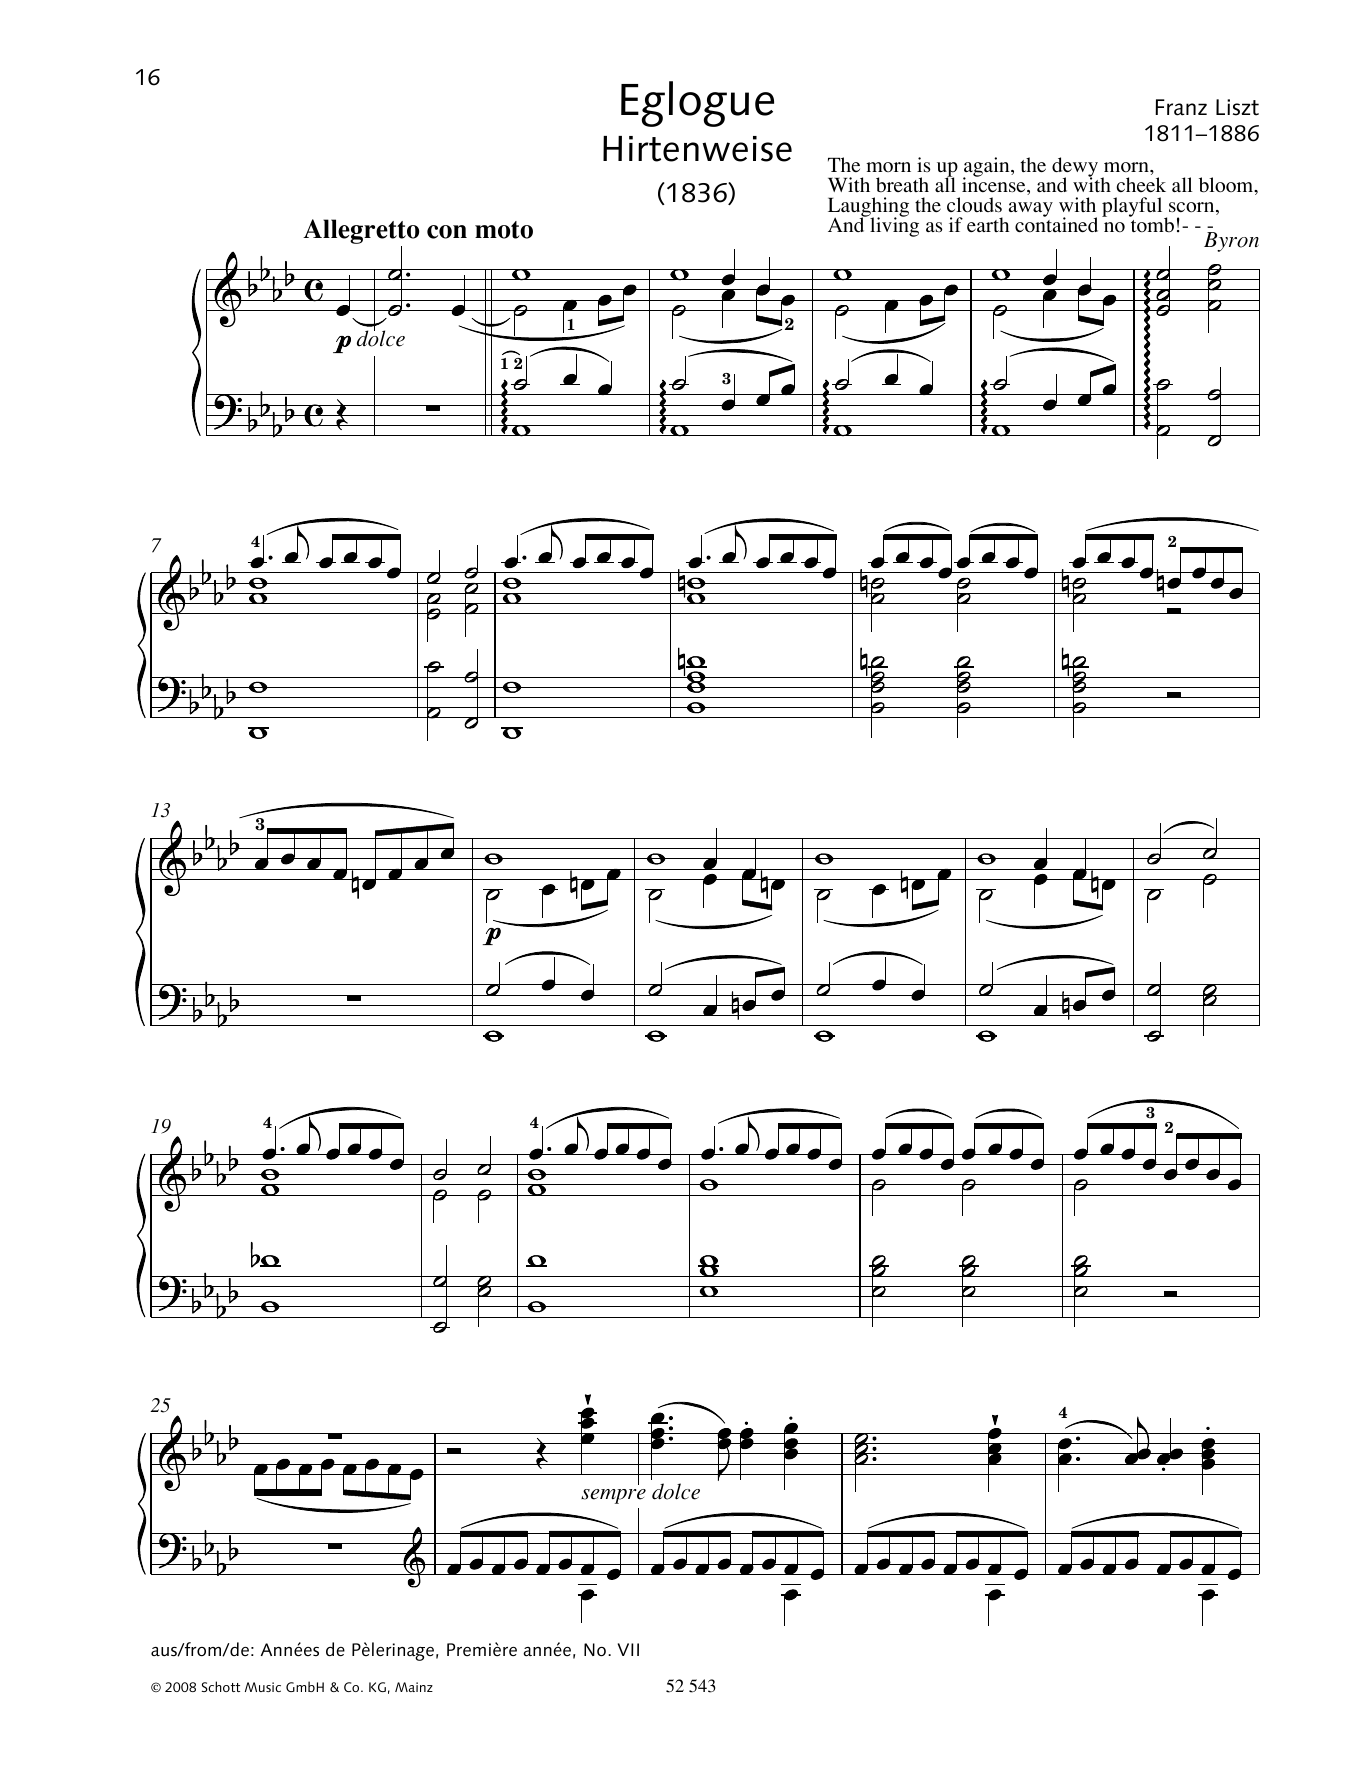 Eglogue (Hirtenweise) sheet music